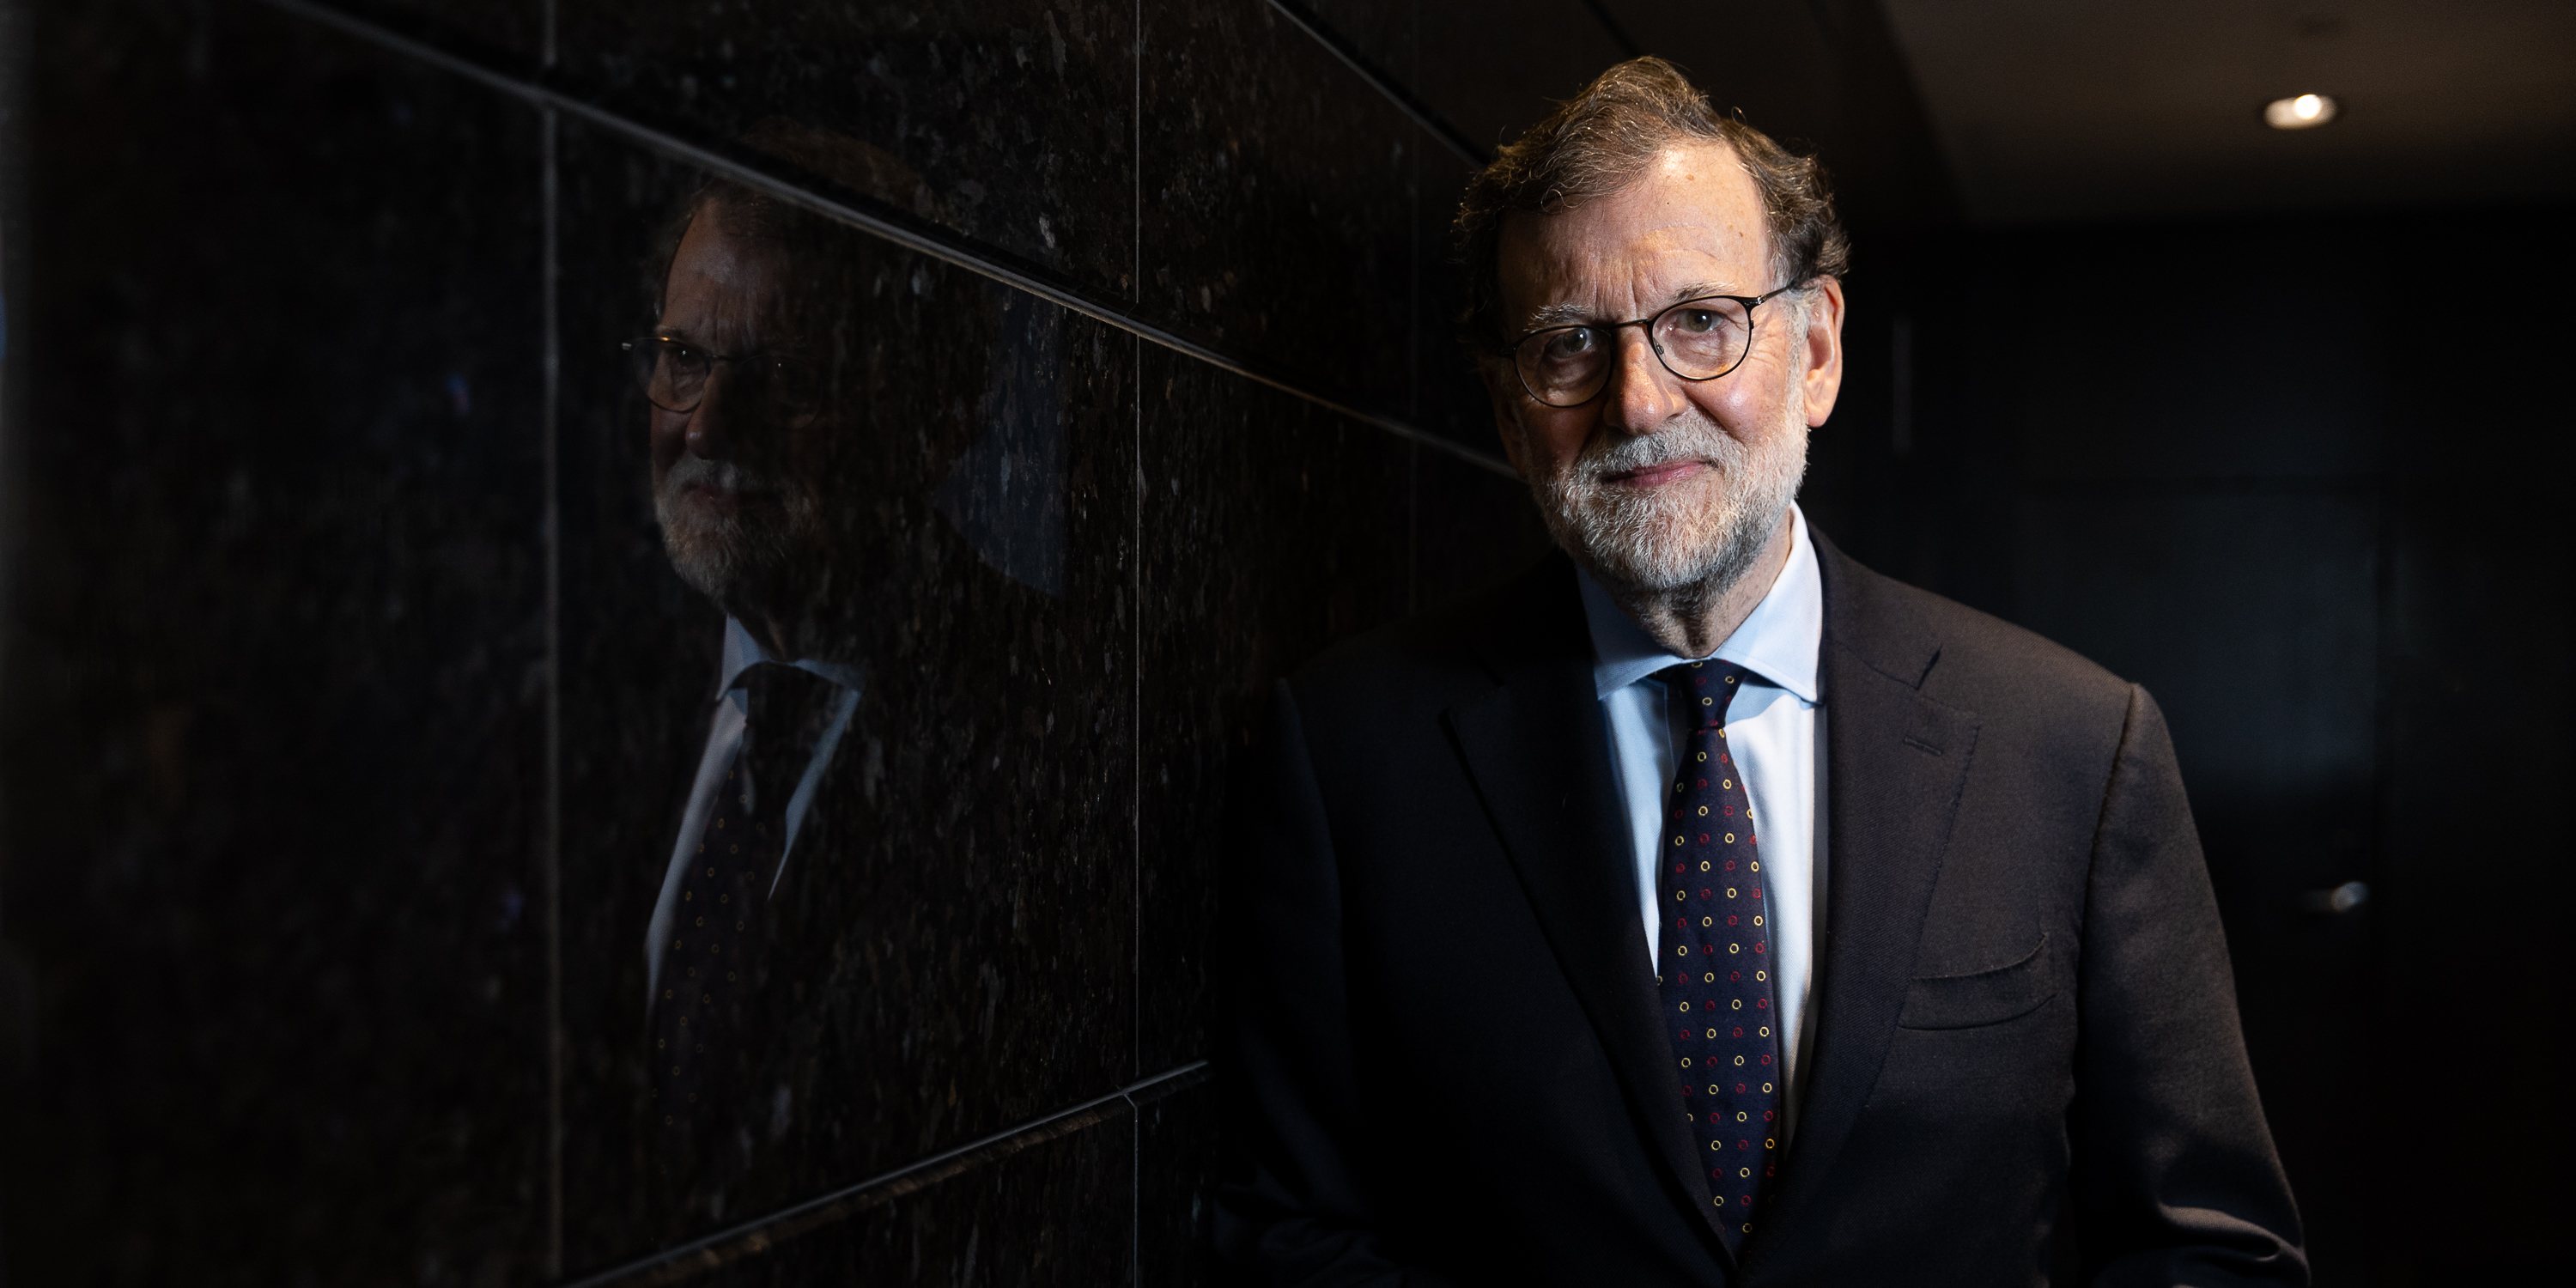 Mariano Rajoy deixou duras críticas à amnistia, refutando o argumento de Pedro Sánchez de que trará paz à sociedade espanhola